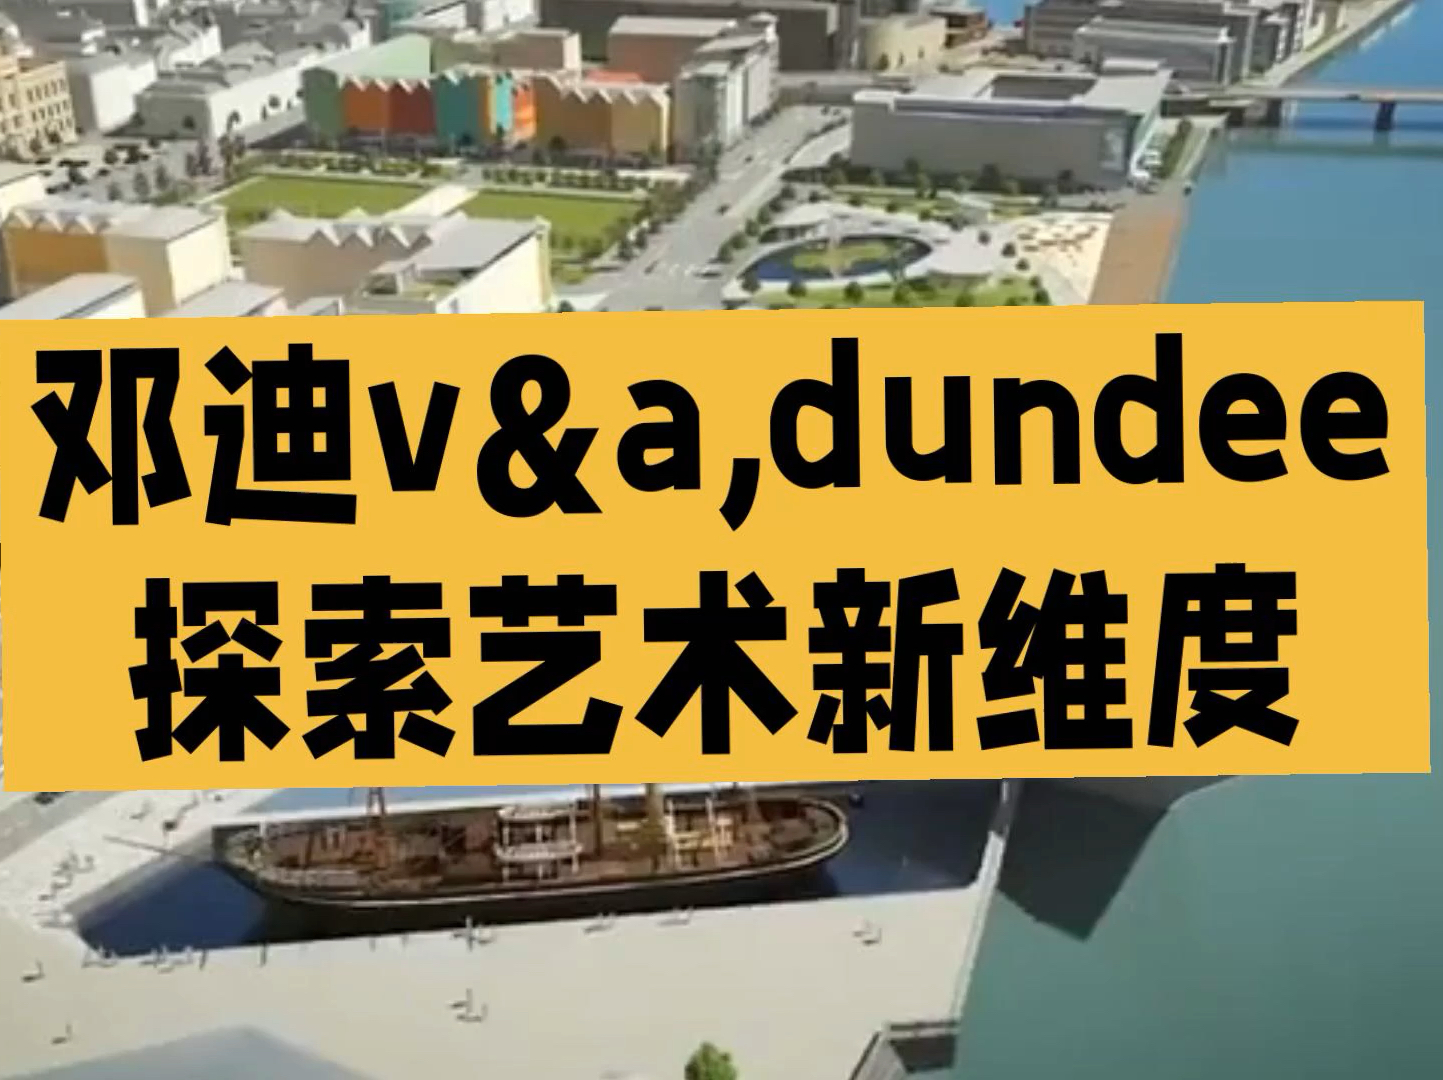 苏格兰璀璨明珠：邓迪V&ADundee的艺术之旅